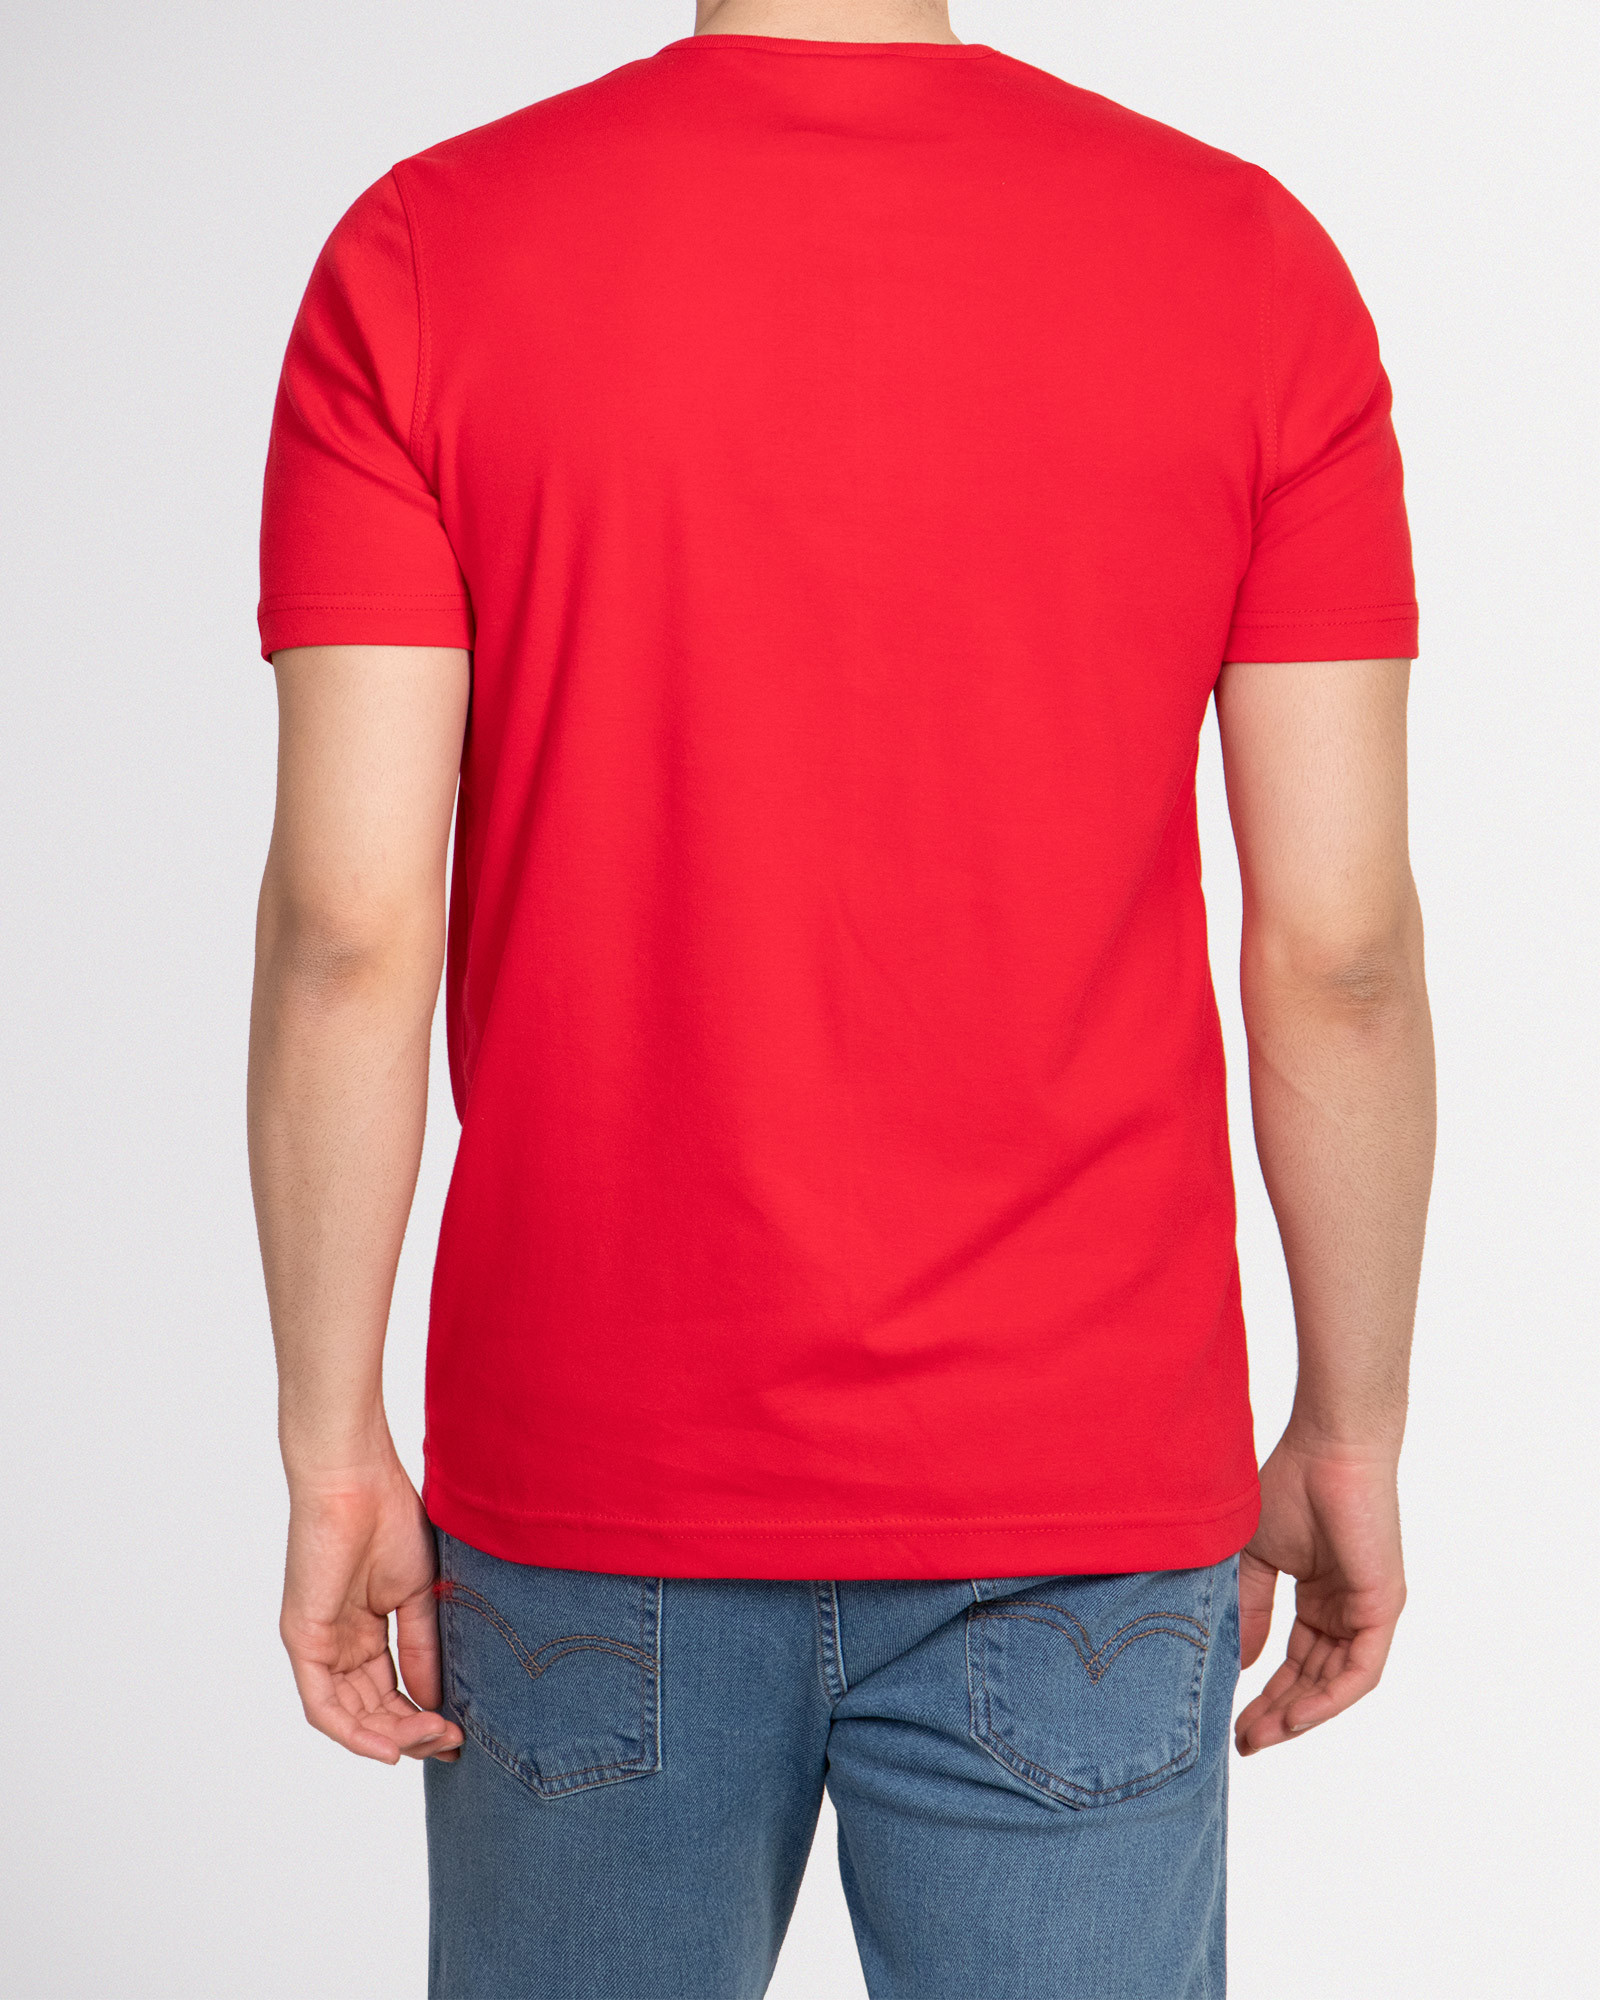 خرید تیشرت آستین کوتاه مردانه ساده قرمز 20195102